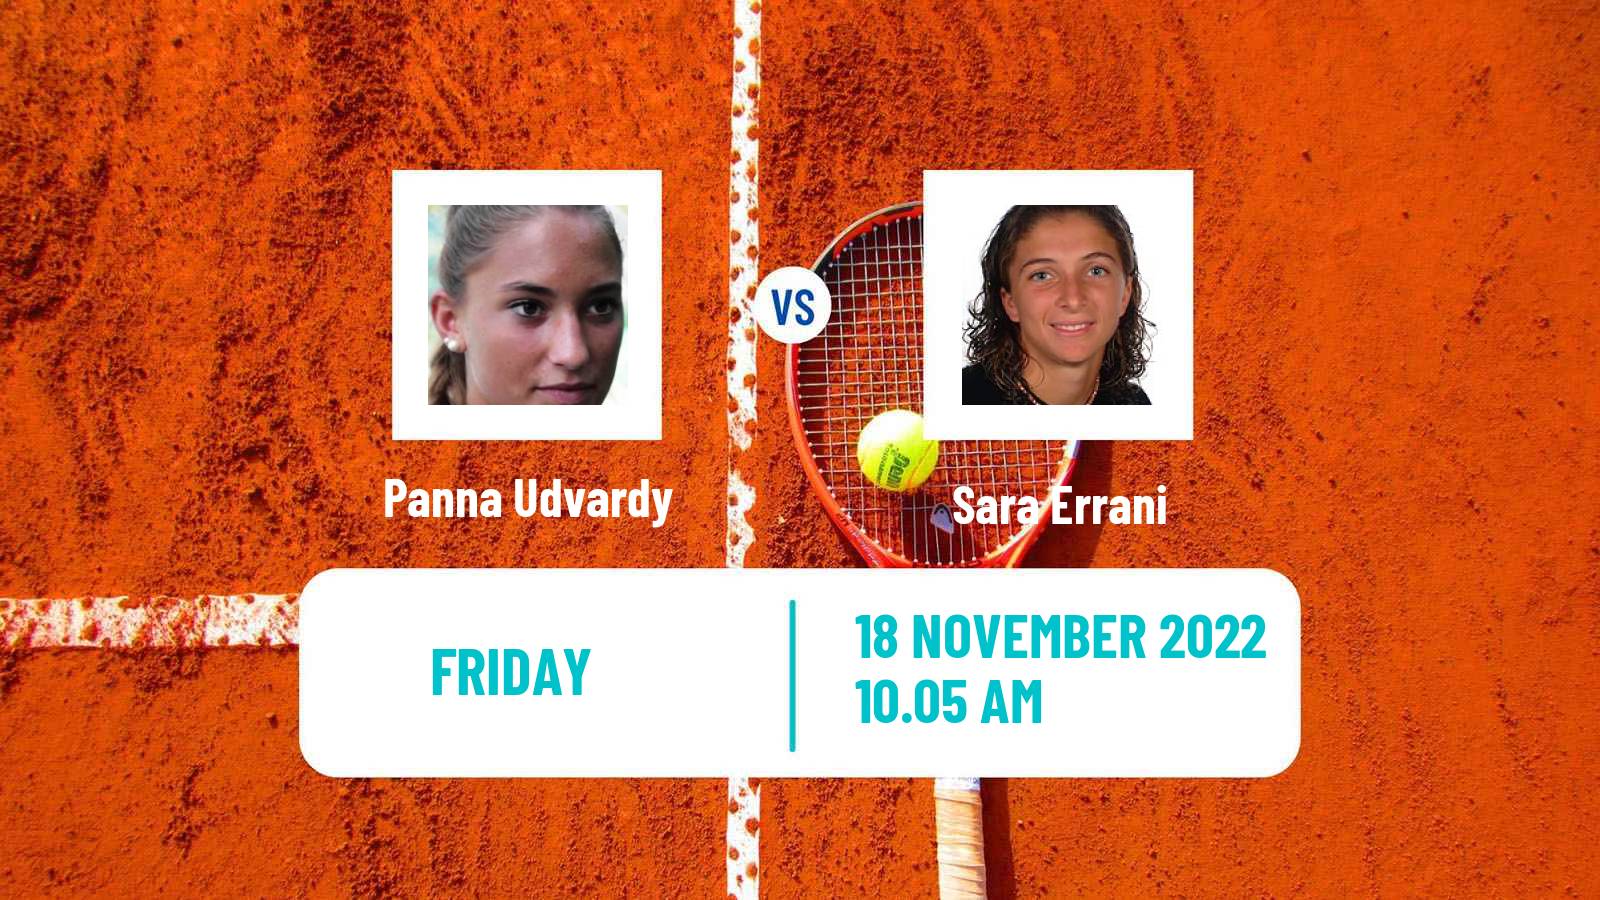 Tennis ATP Challenger Panna Udvardy - Sara Errani